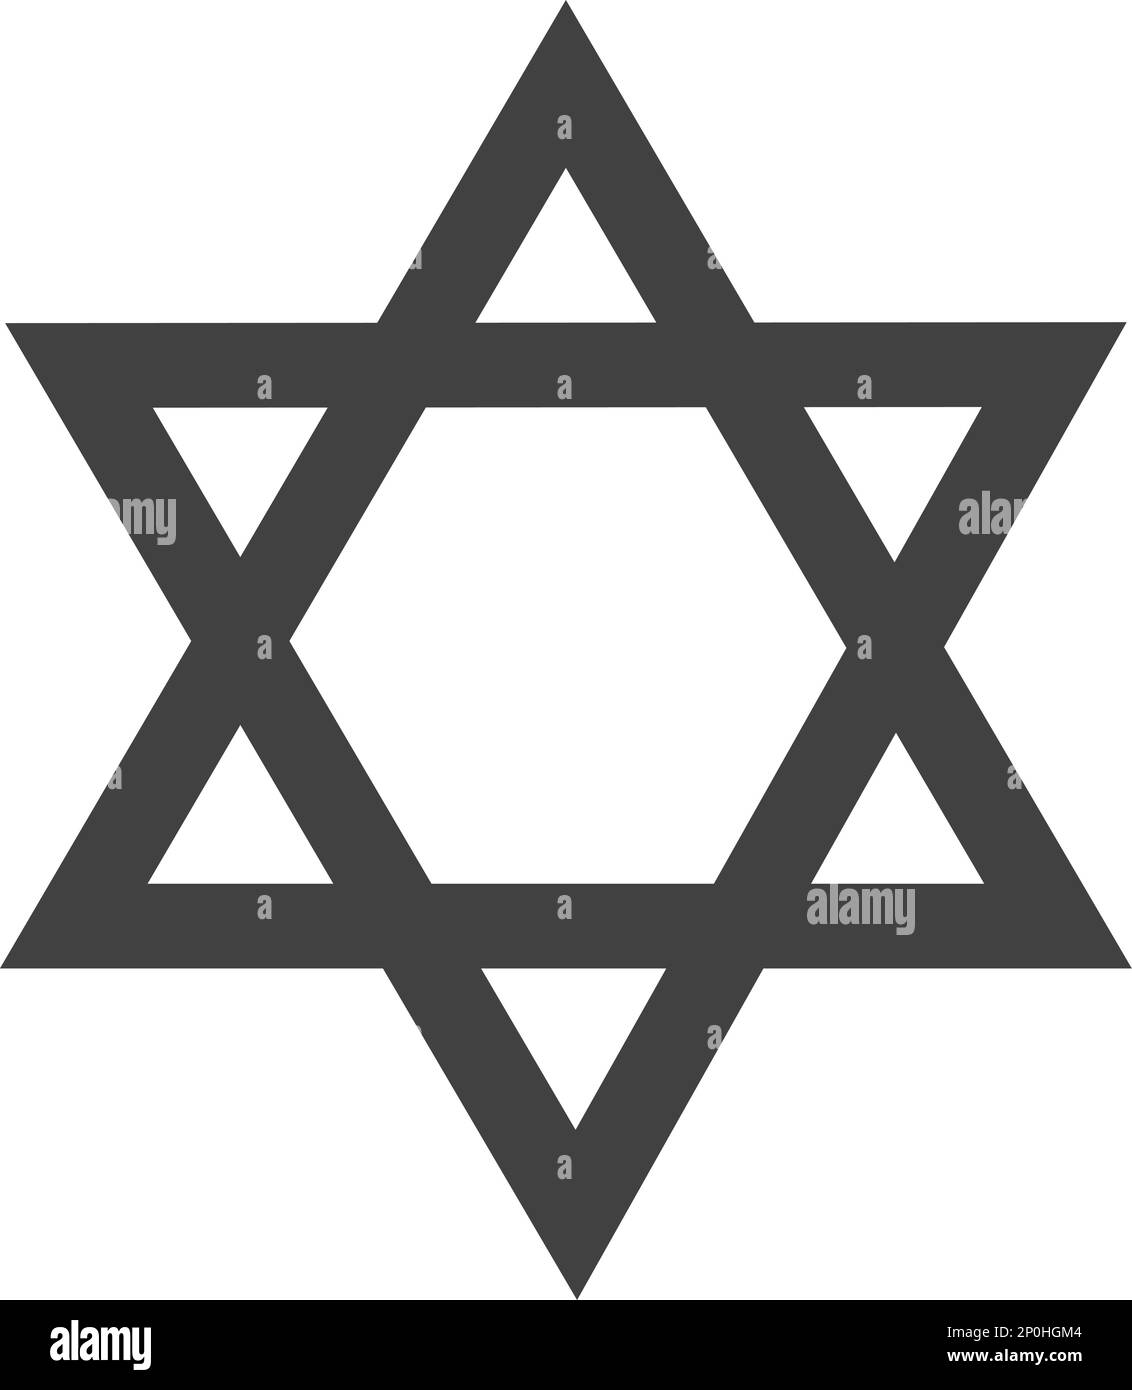 Giudaismo segno religioso vettoriale - simbolo ebraico - Stella ebraica - segni e simboli religiosi vettoriali Illustrazione Vettoriale